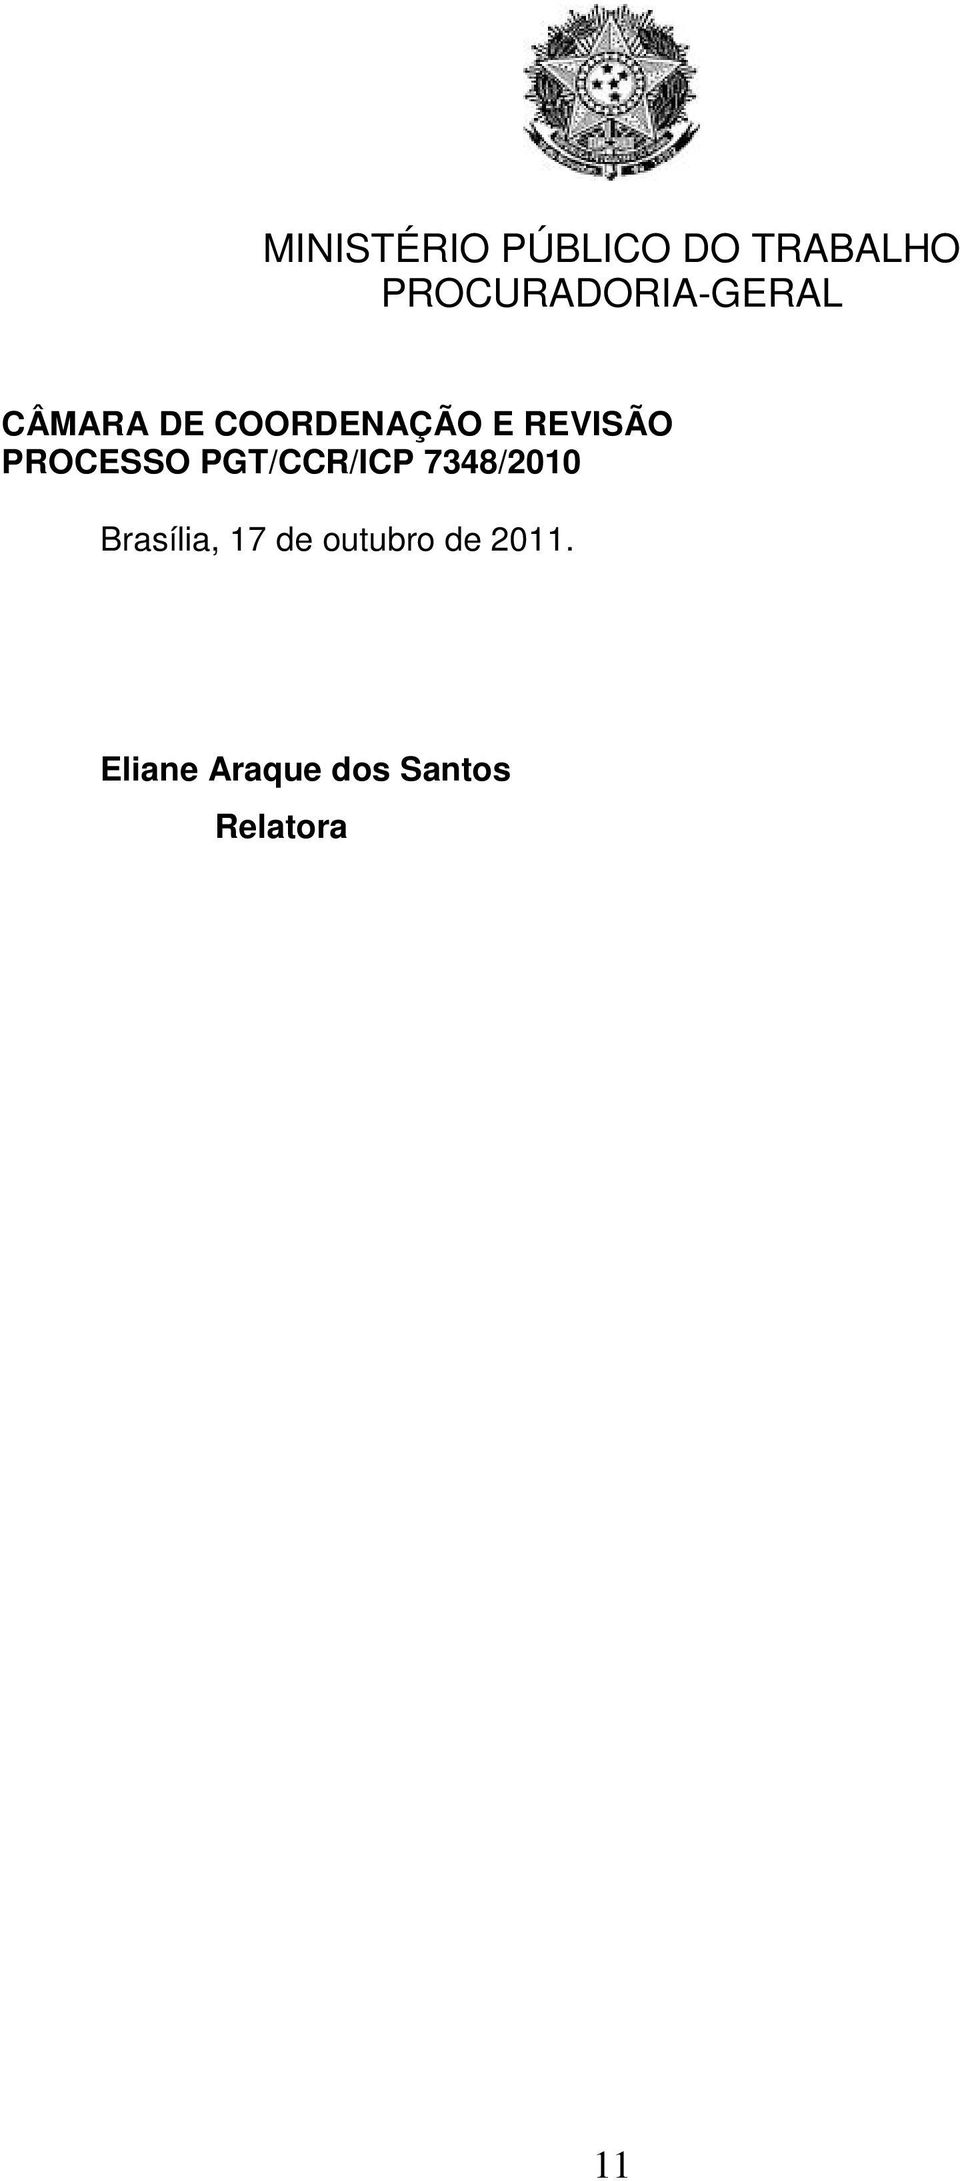 Eliane Araque dos